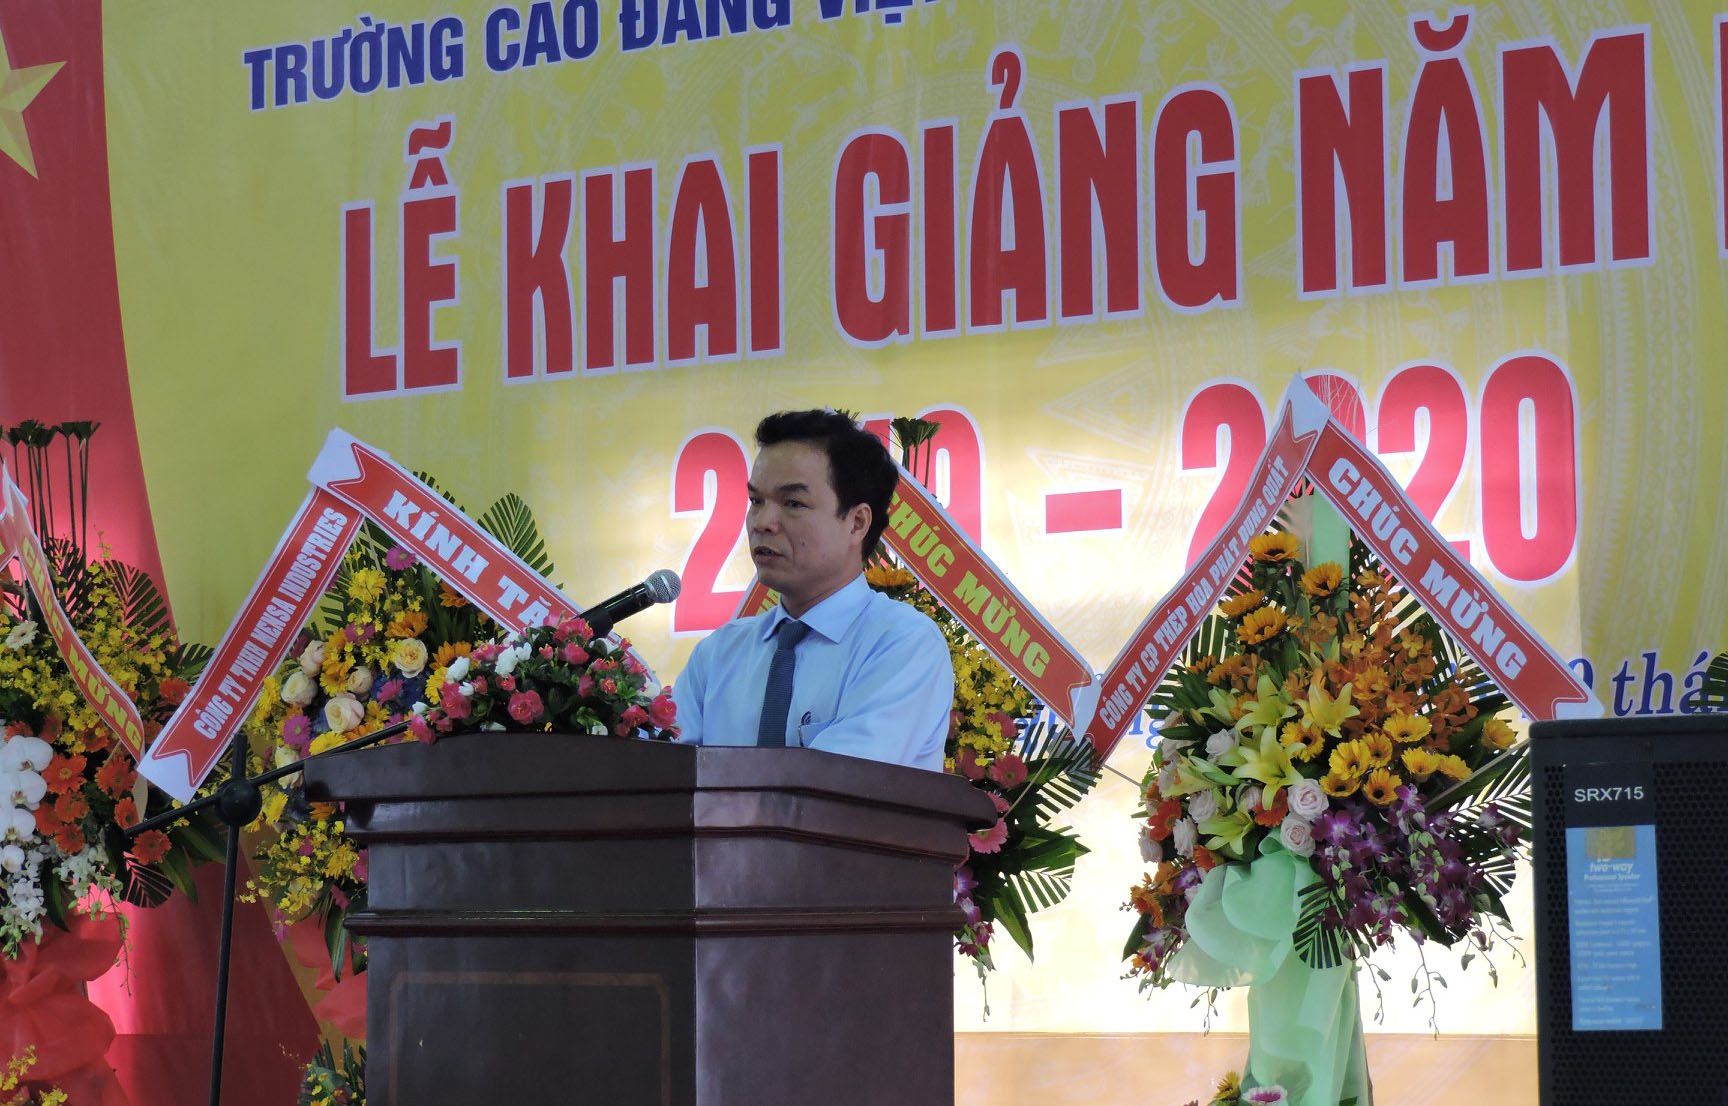 Trường cao đẳng Việt Nam - Hàn Quốc - Quảng Ngãi tổ chức khai giảng năm học 2019 – 2020